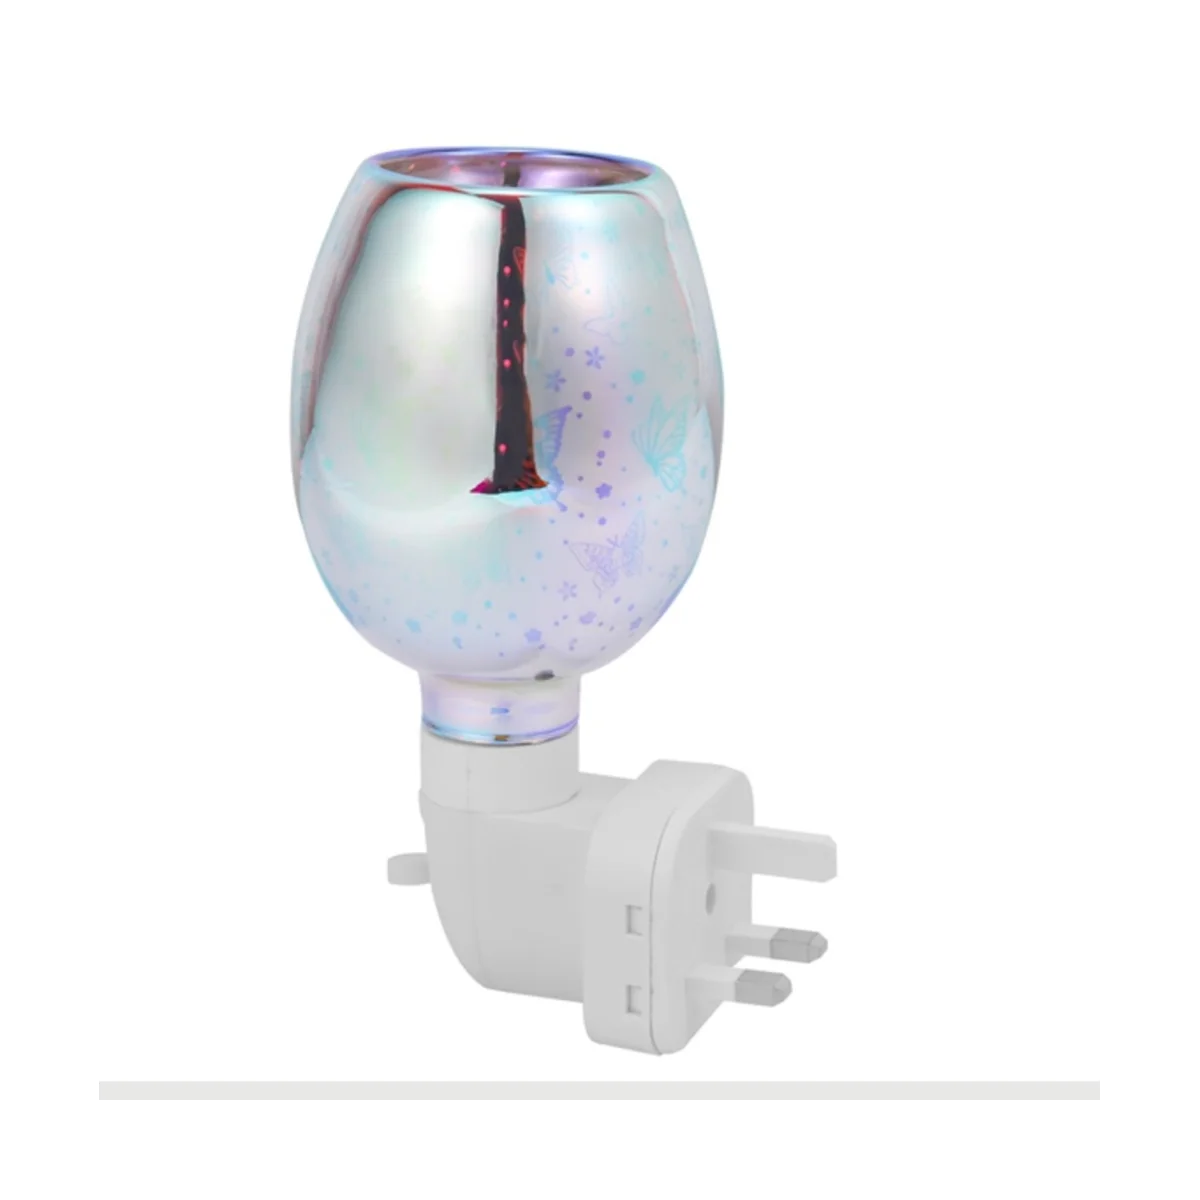 

Электрическая горелка для расплава воска, 3D лампа для ароматерапии, ночник, настенный Декоративный рассеиватель с вилкой Стандарта Великобритании